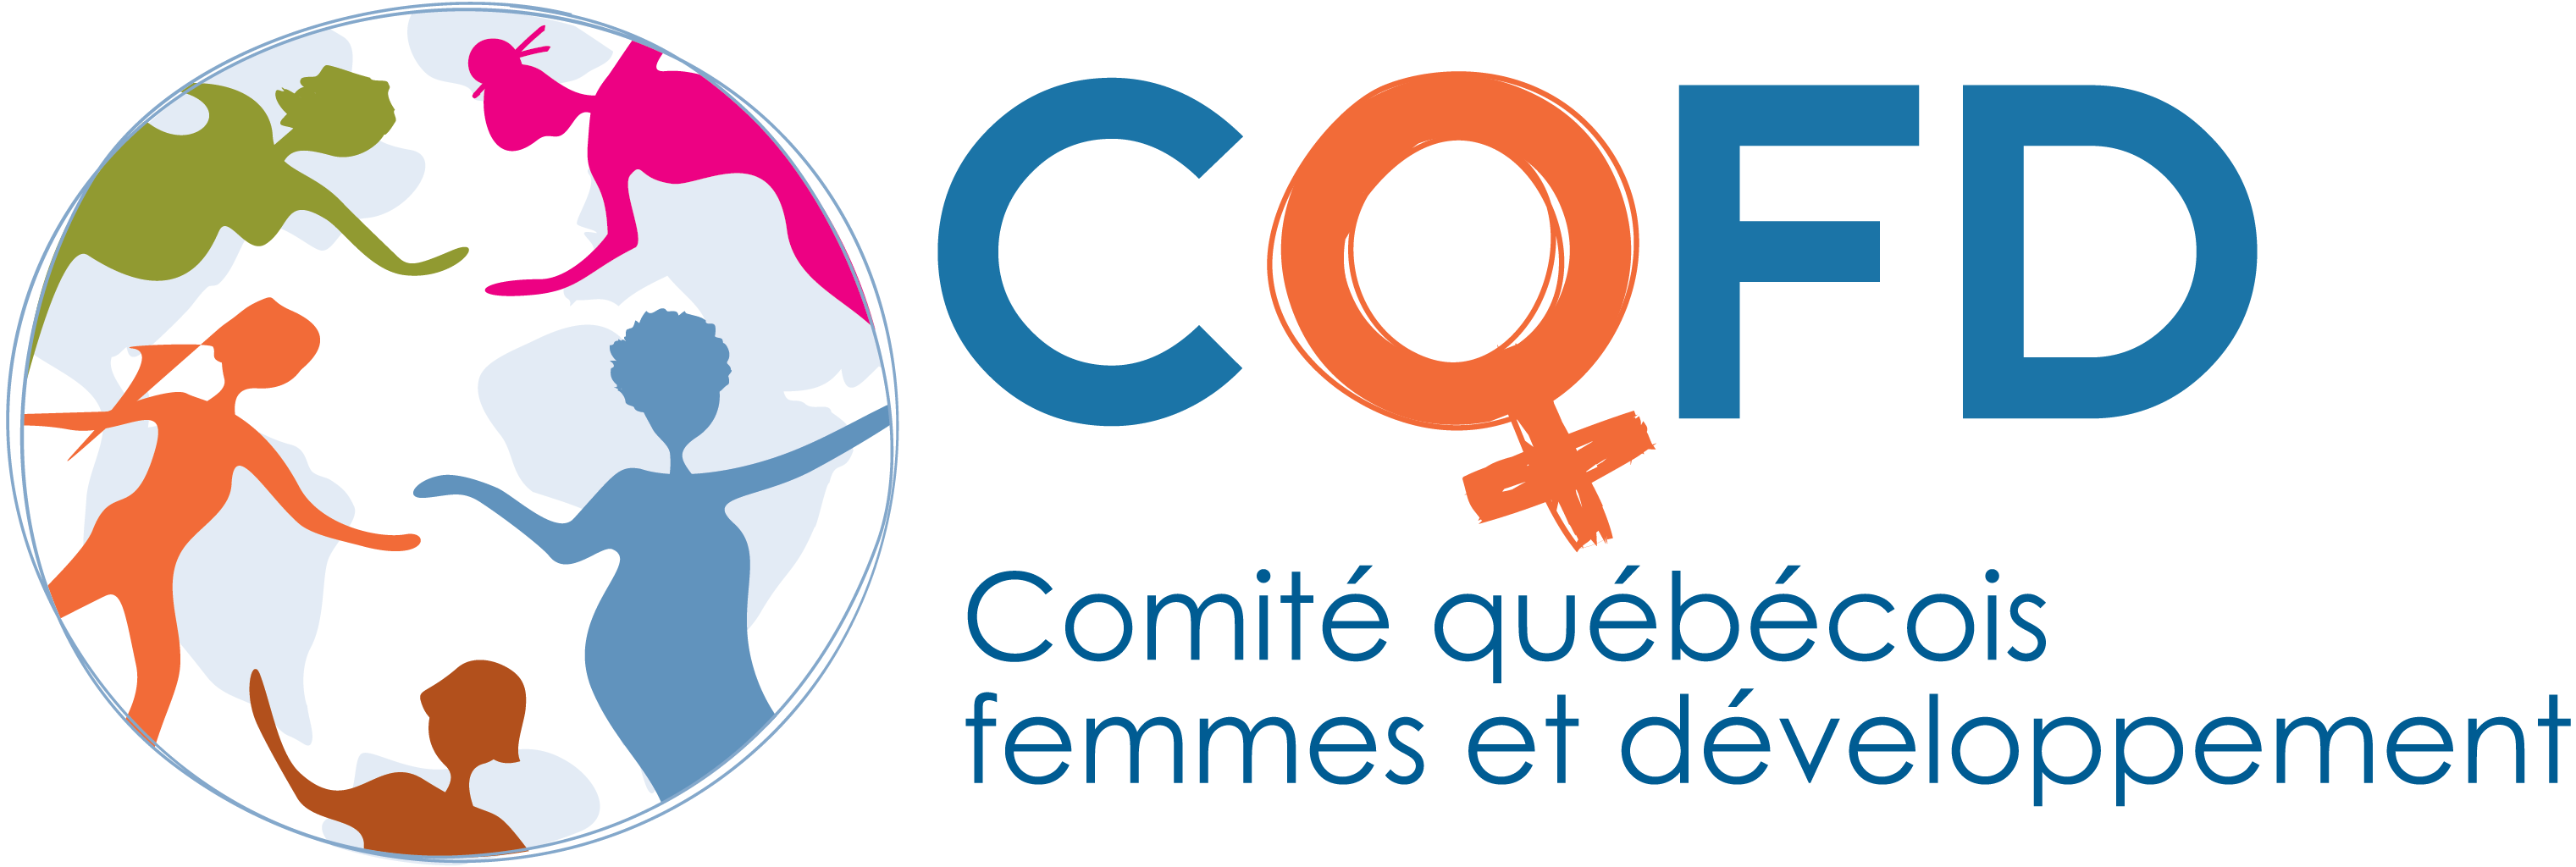 Comité québécois femmes et développement (CQFD)